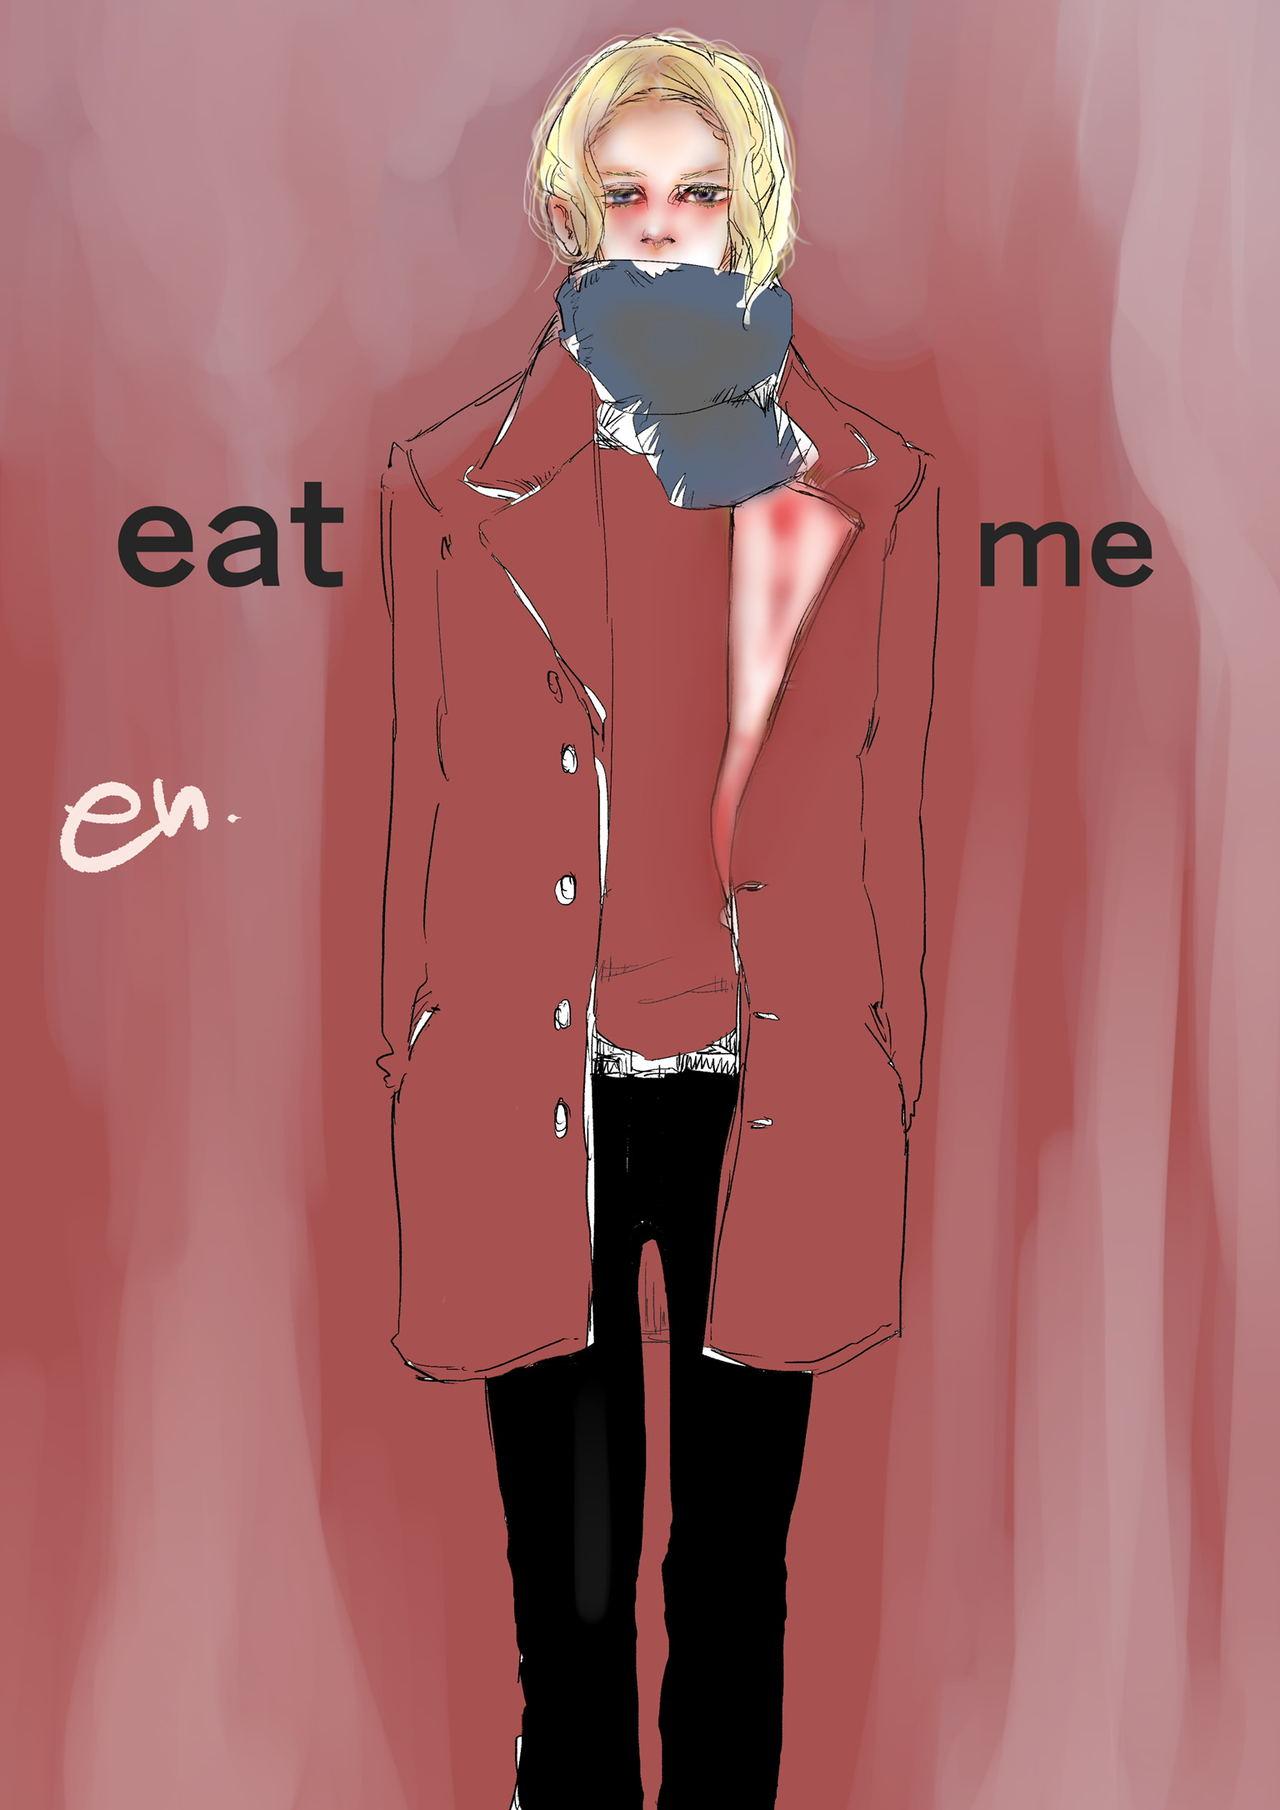 eat me 0